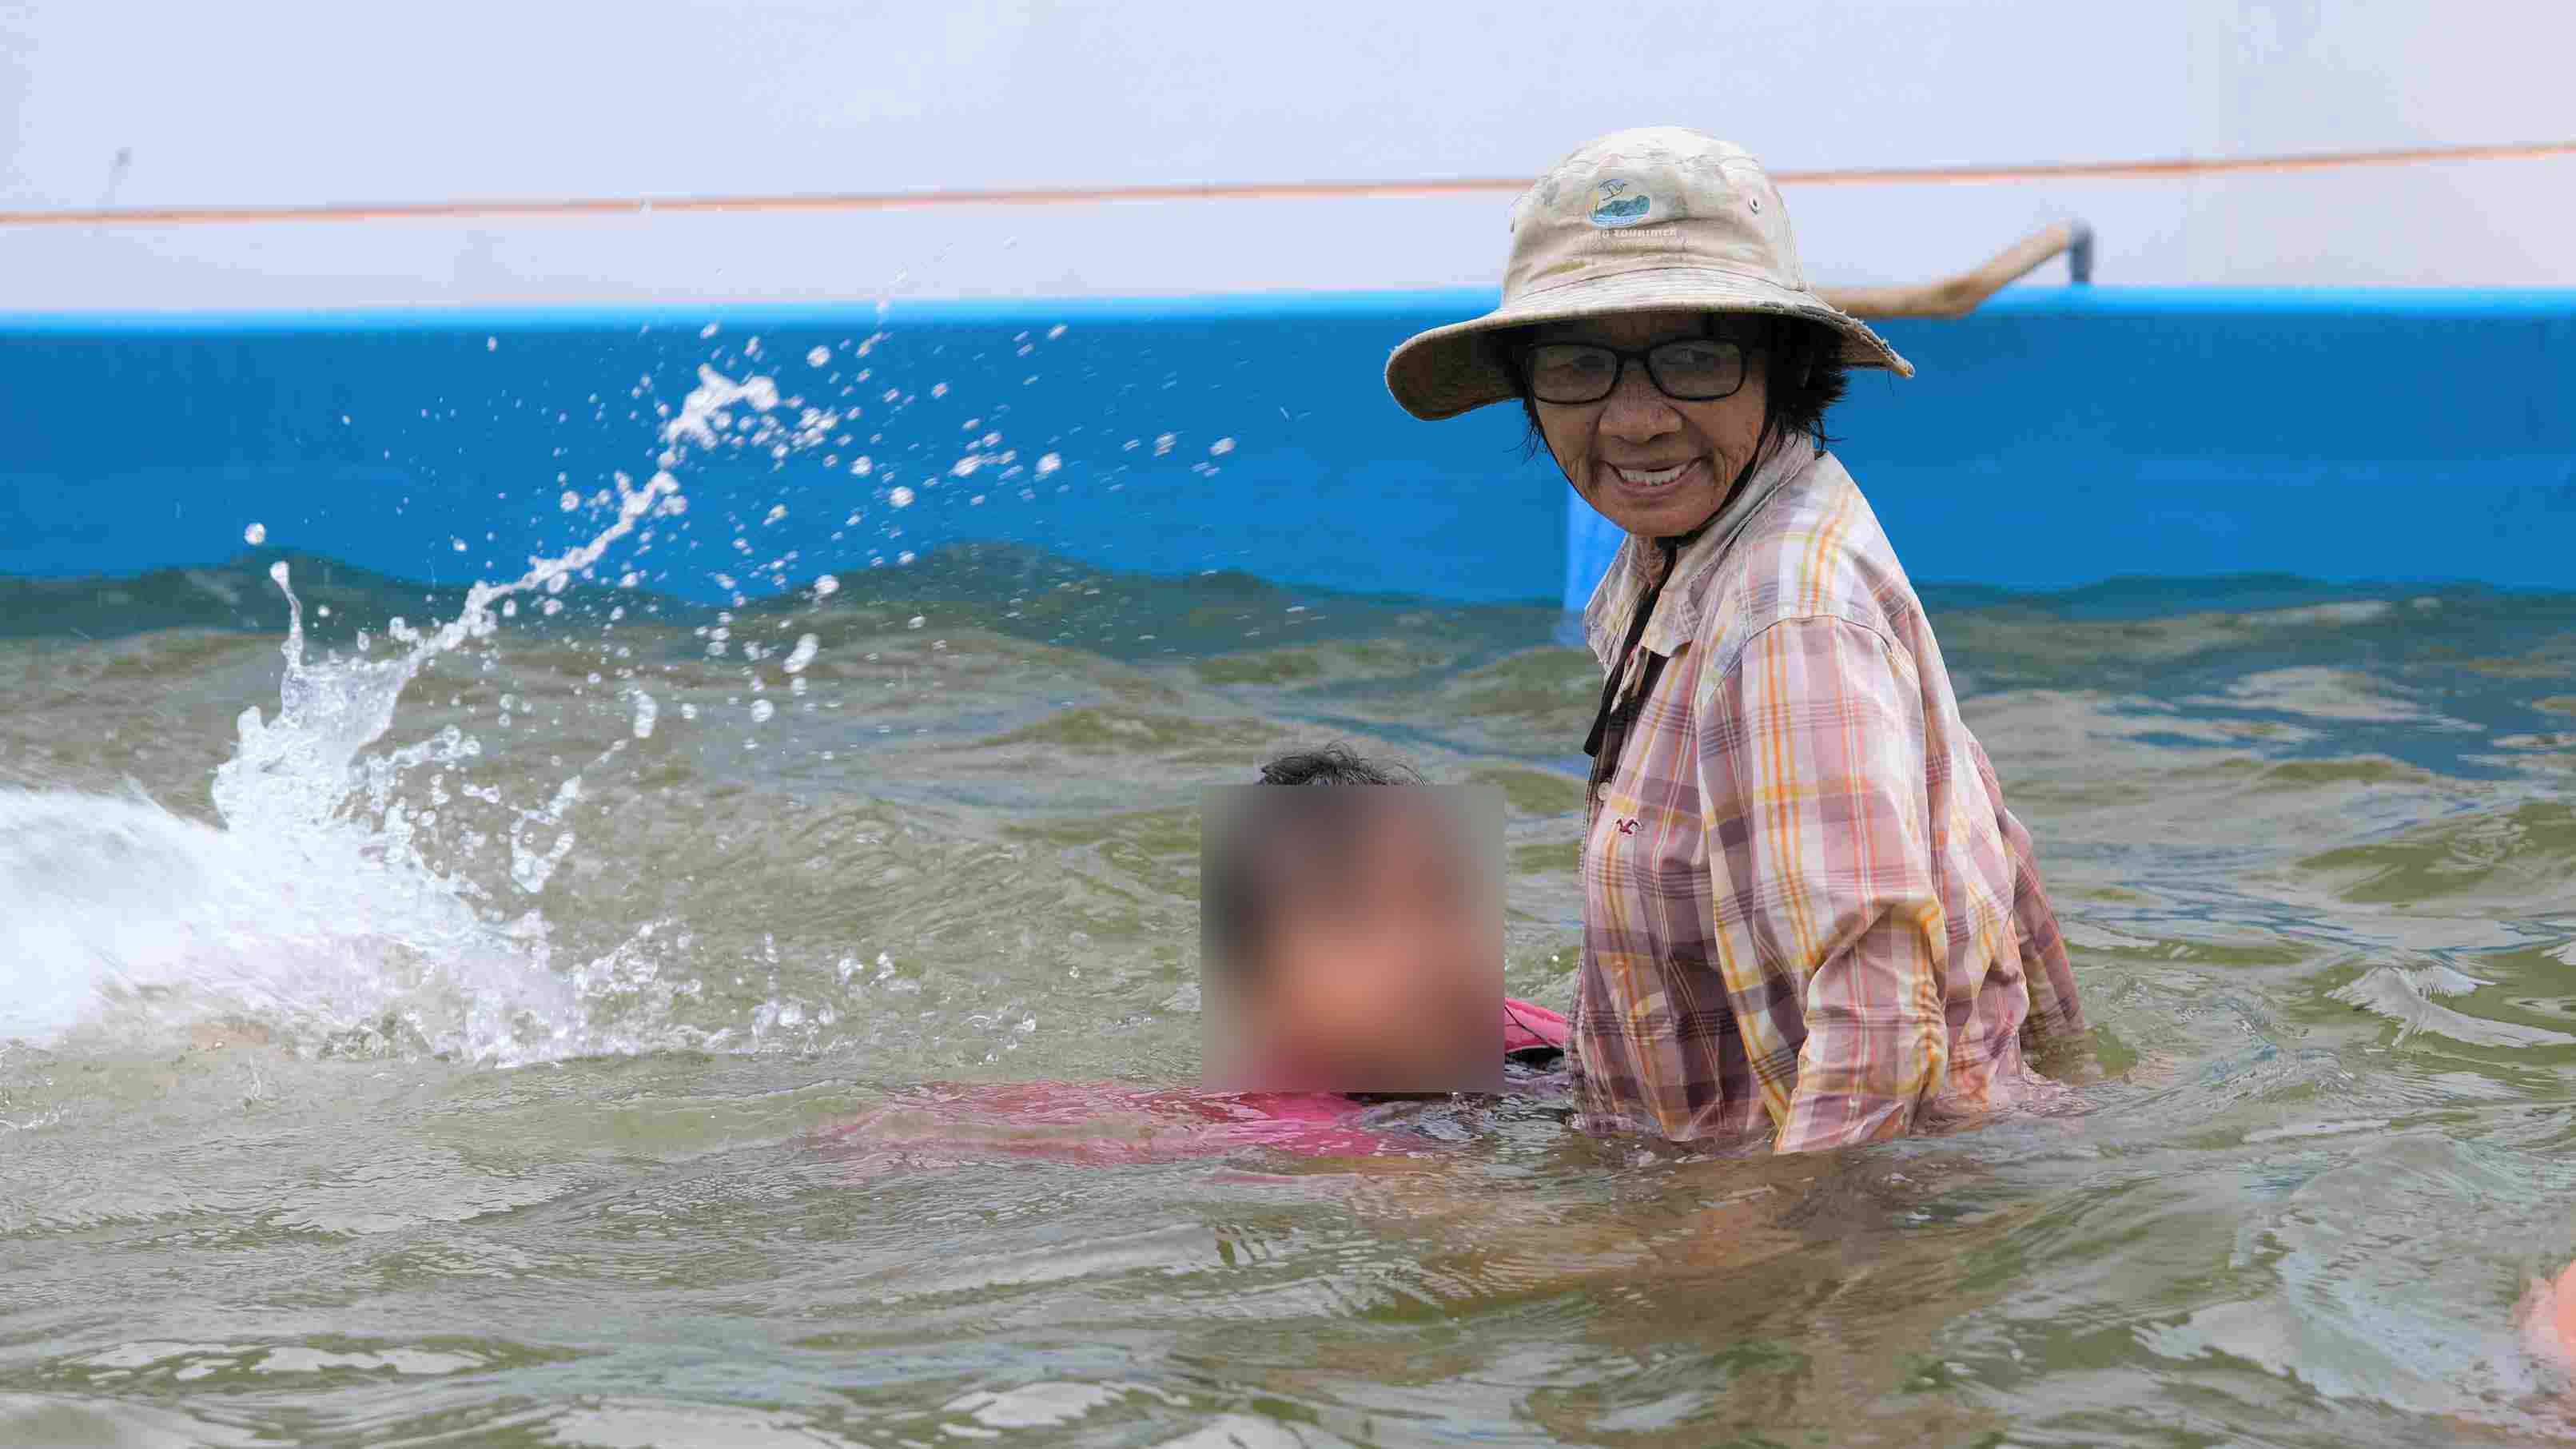 Bà Sáu Thia tận tình hướng dẫn tập bơi cho trẻ nhỏ. Ảnh: Phong Linh